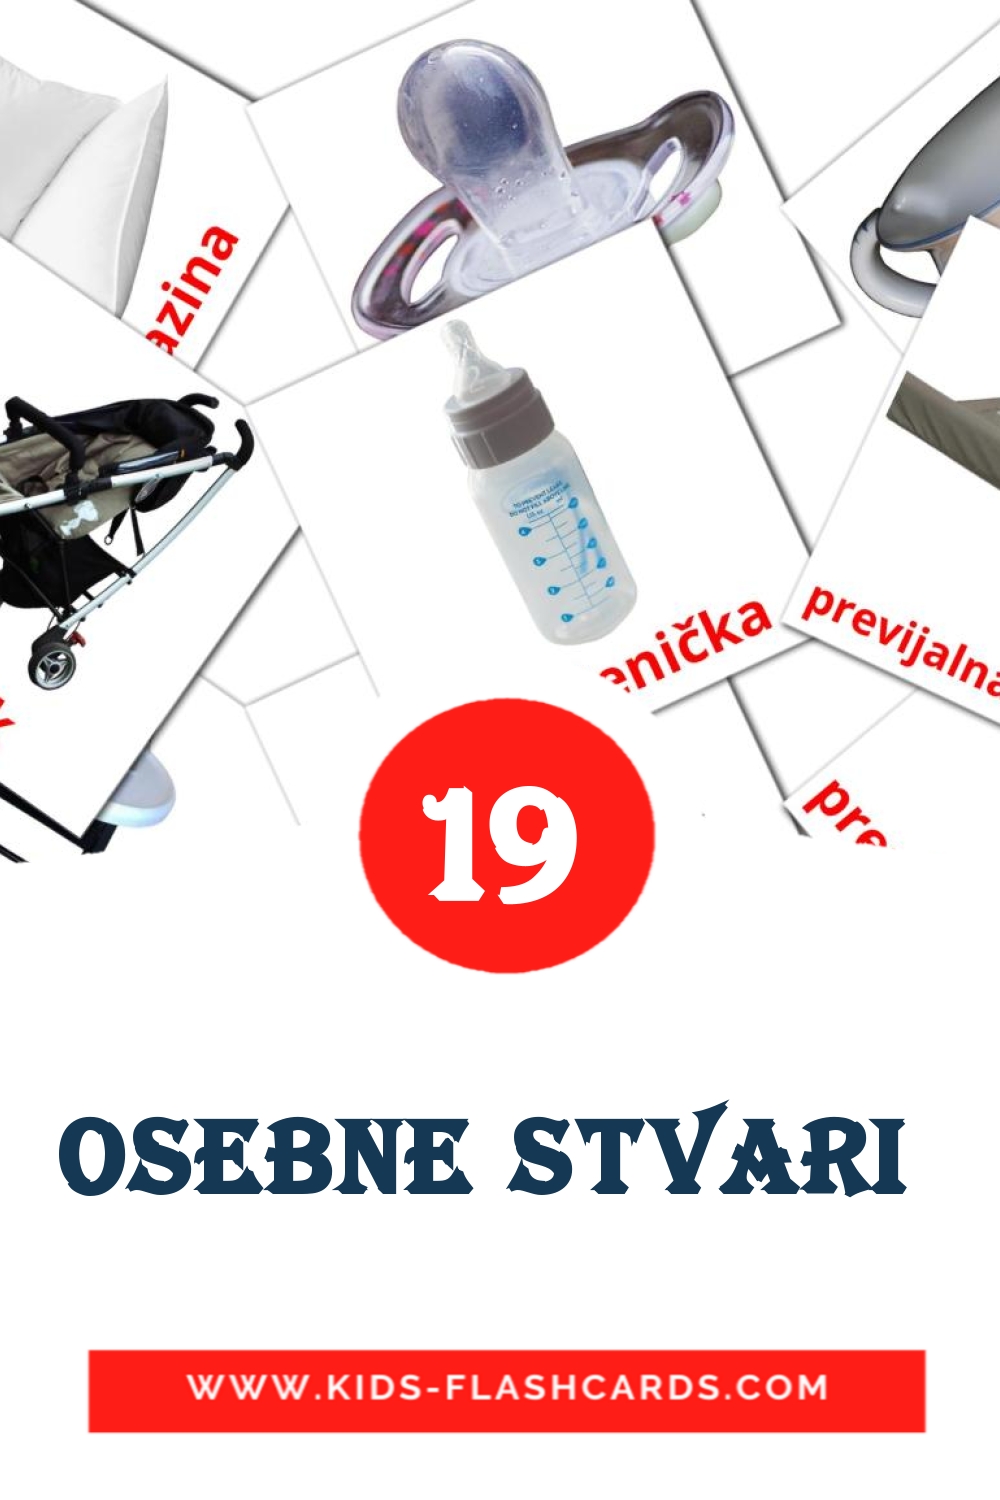 19 Osebne stvari  fotokaarten voor kleuters in het sloveens